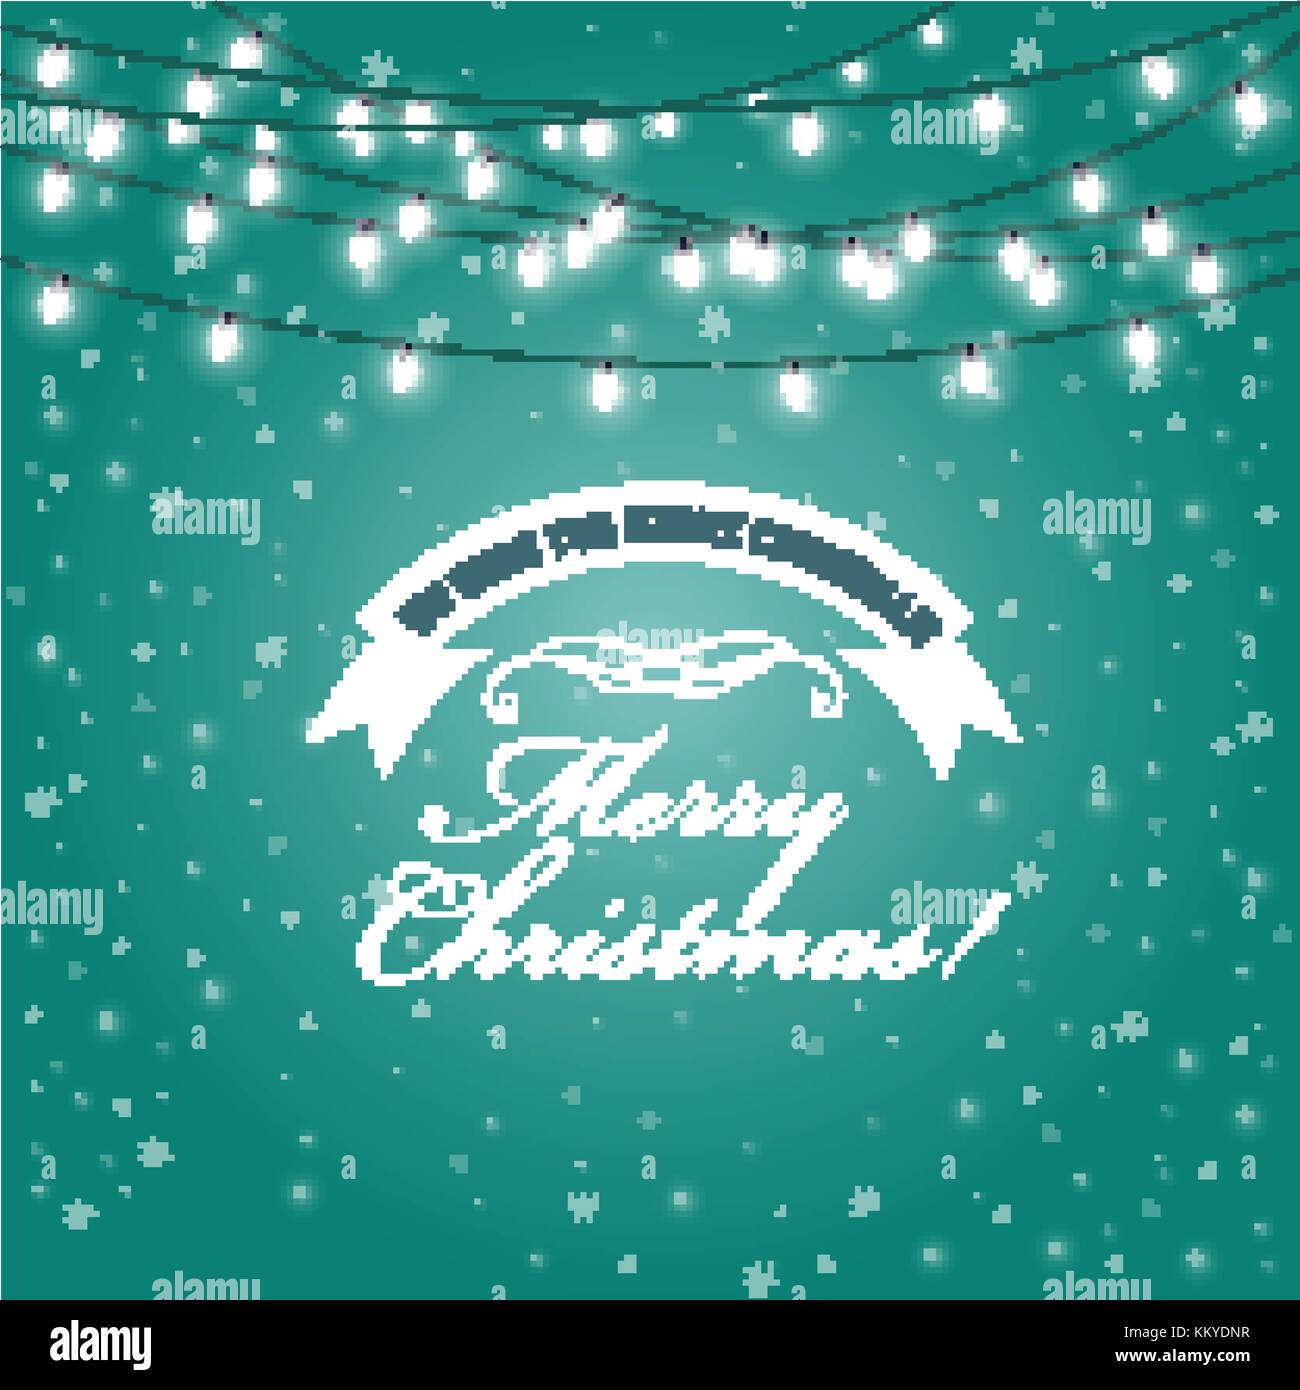 Luces de Navidad en bastidor - luces festivas guirnaldas tarjeta de felicitación Ilustración del Vector